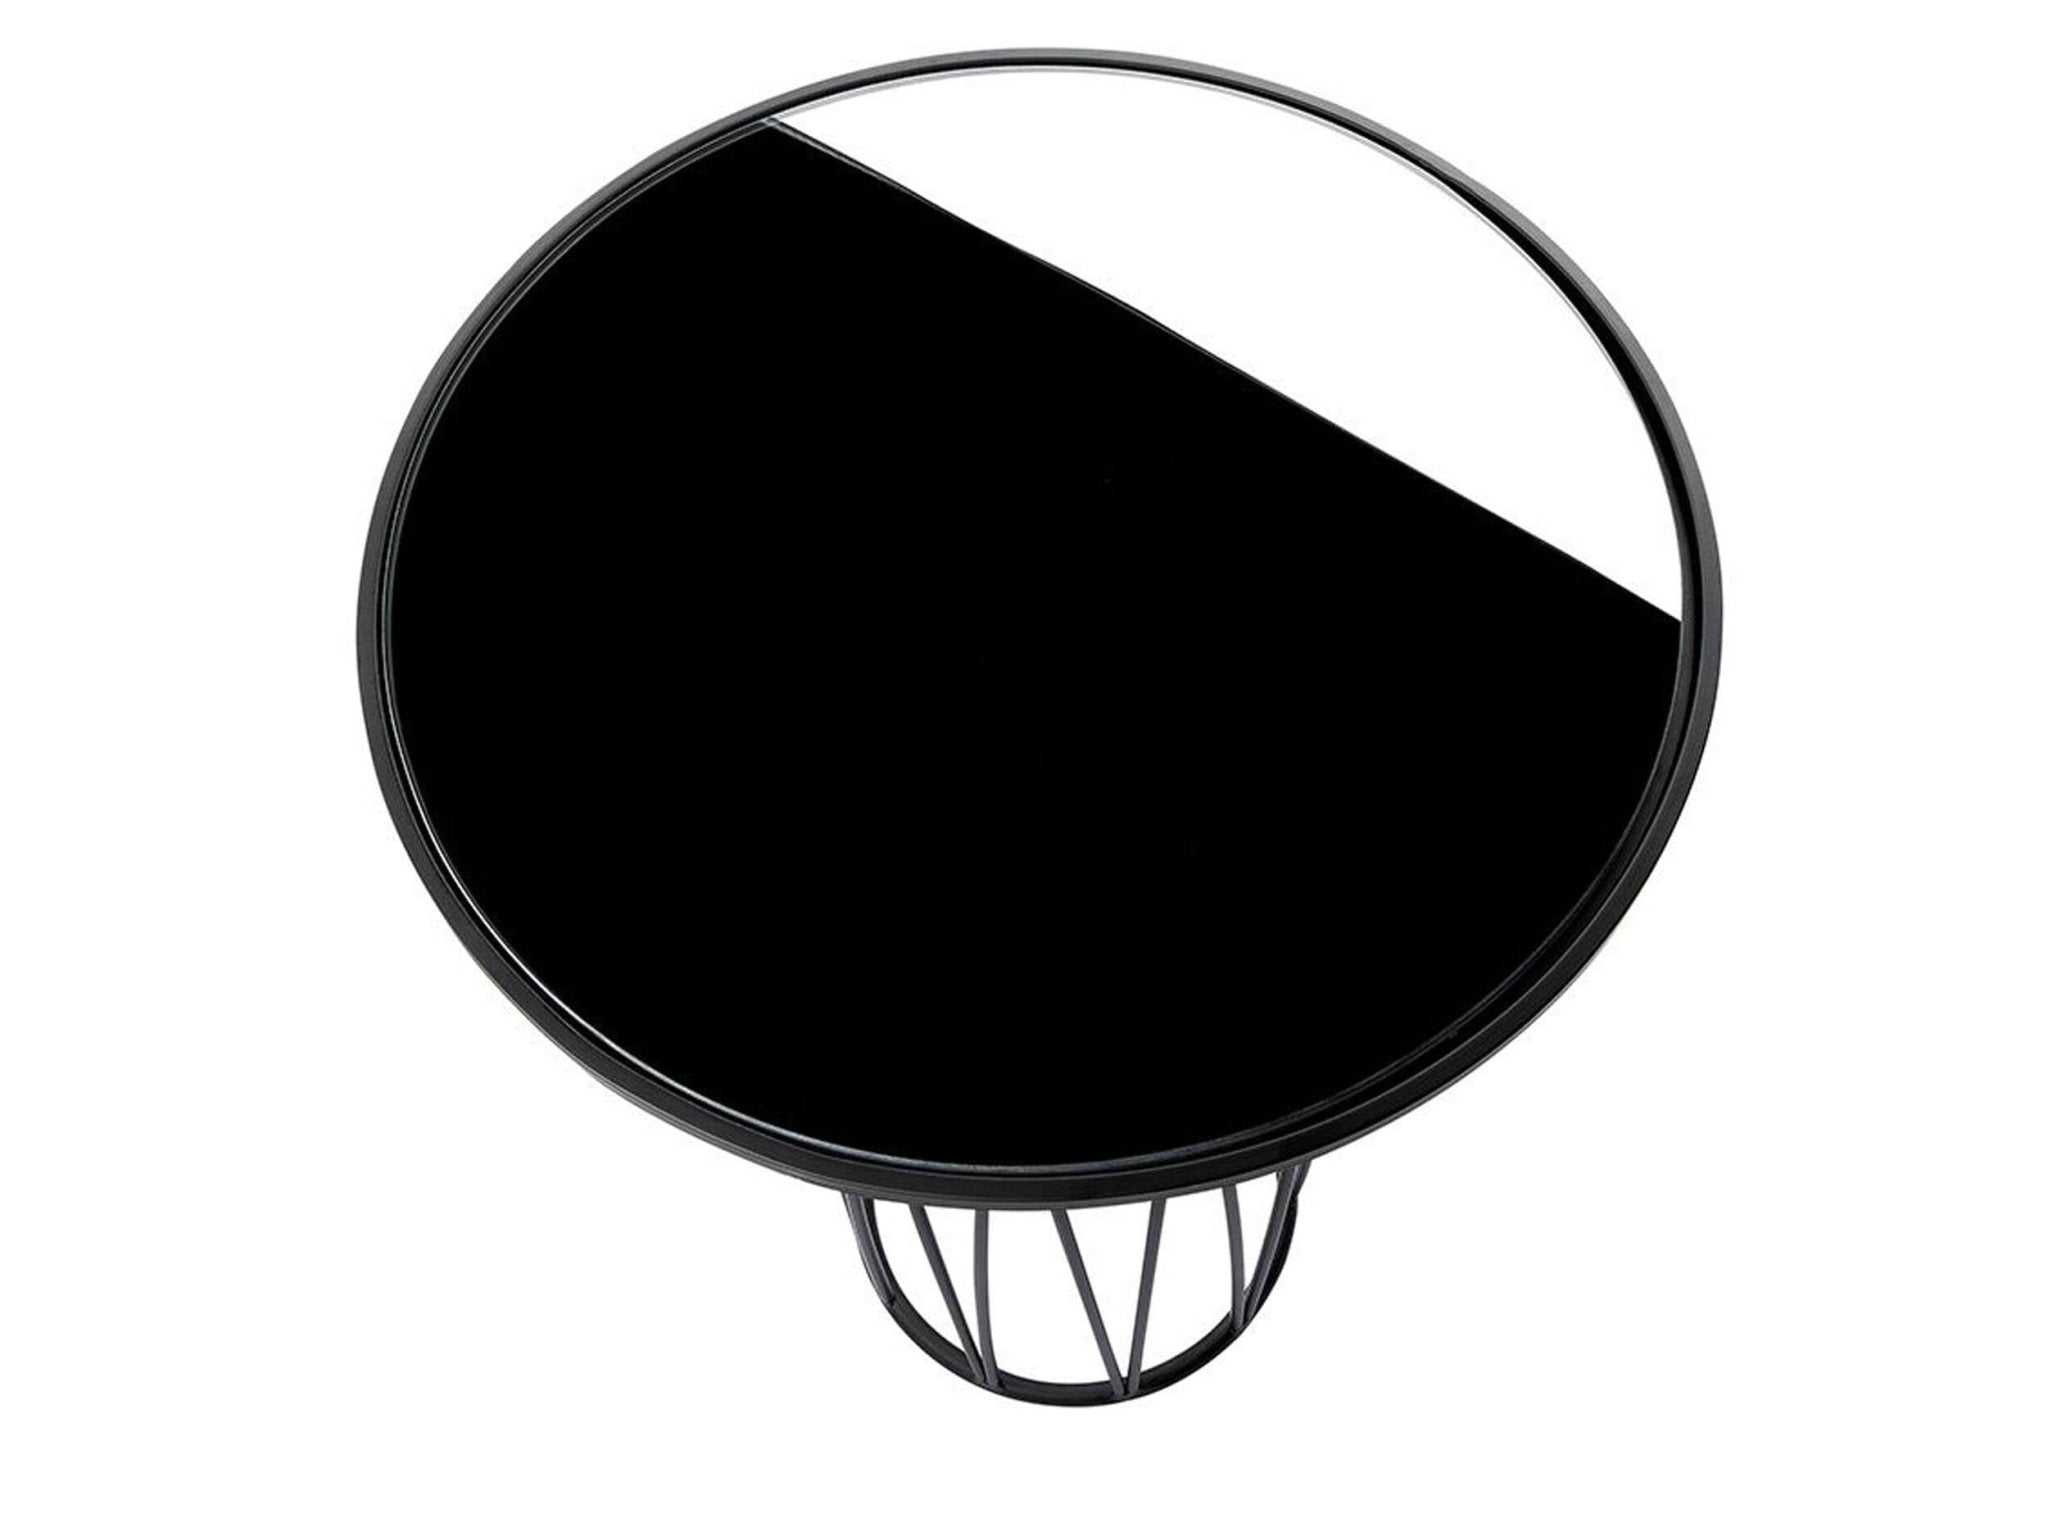 Blad in zwart glas van de graphic moderne bijzettafel